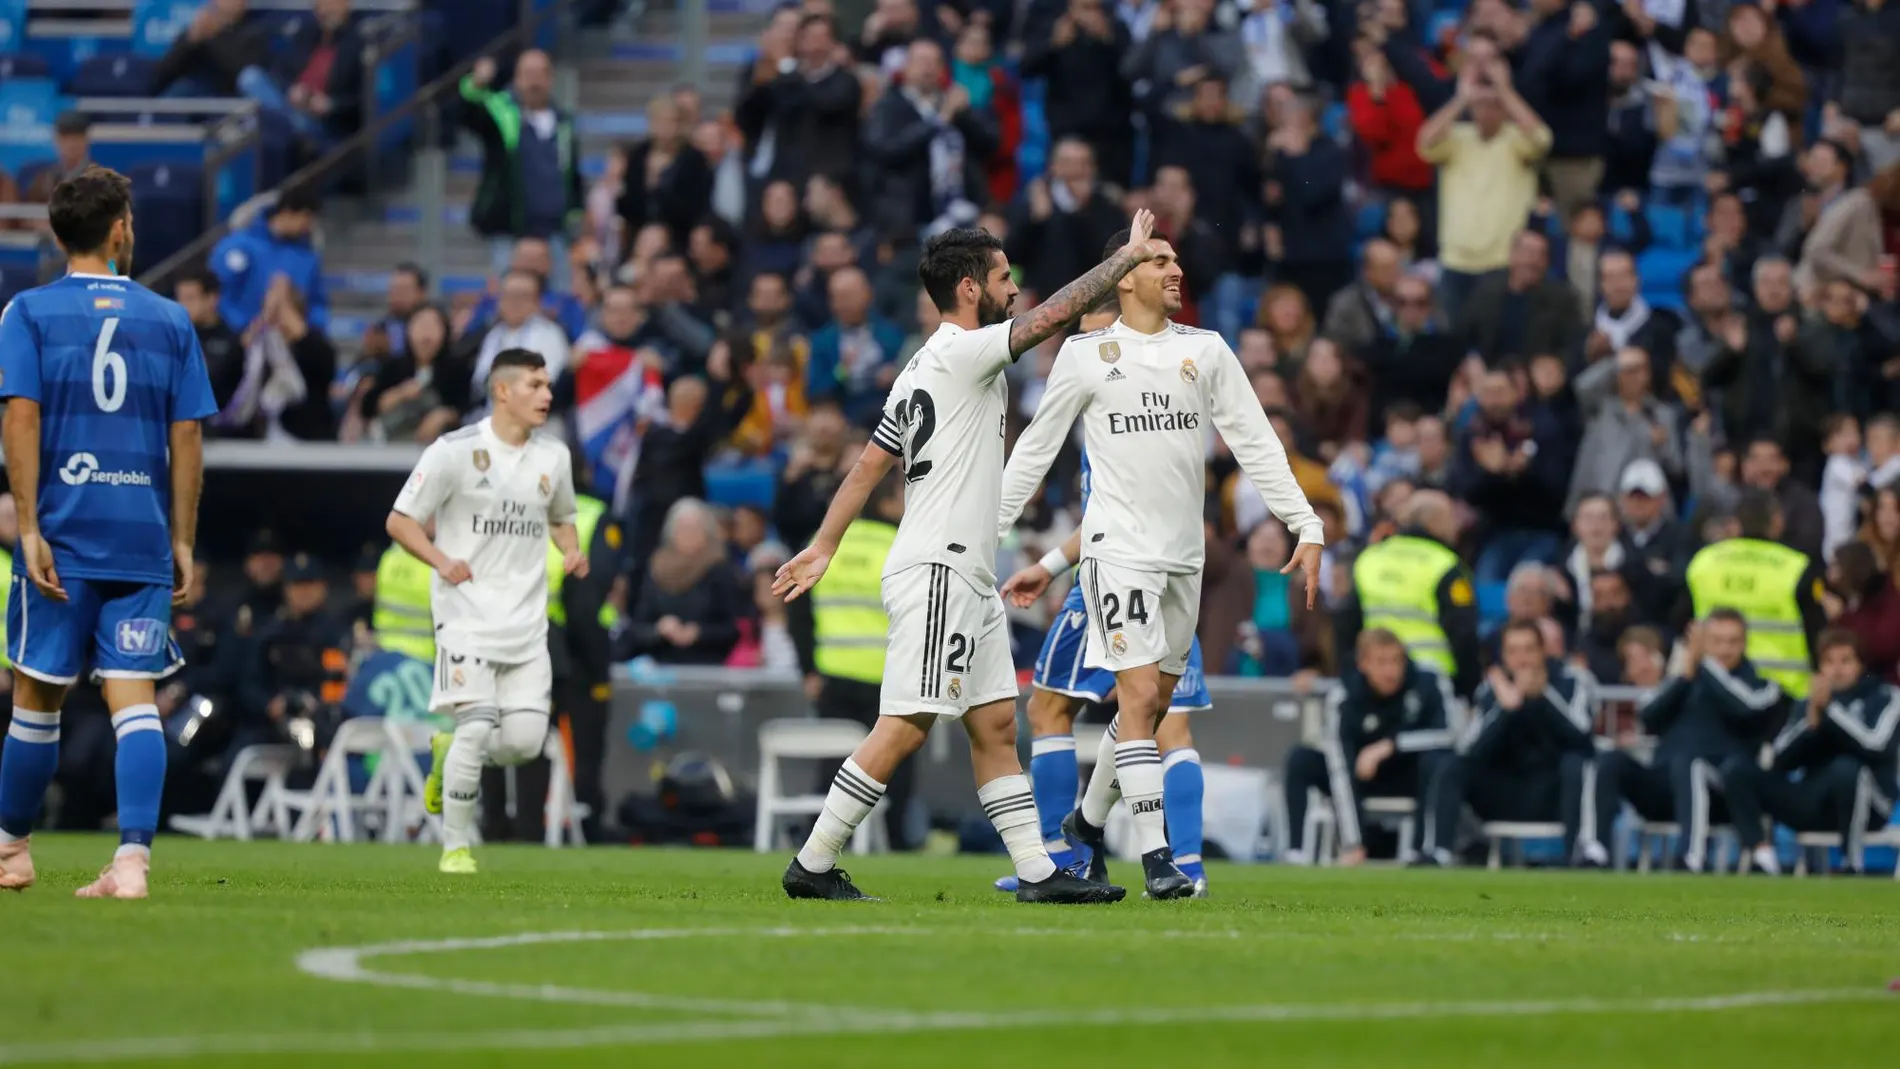 Los jugadores del Real Madrid celebran uno de los goles ante el Melilla. (Foto: Jesús G. Feria)